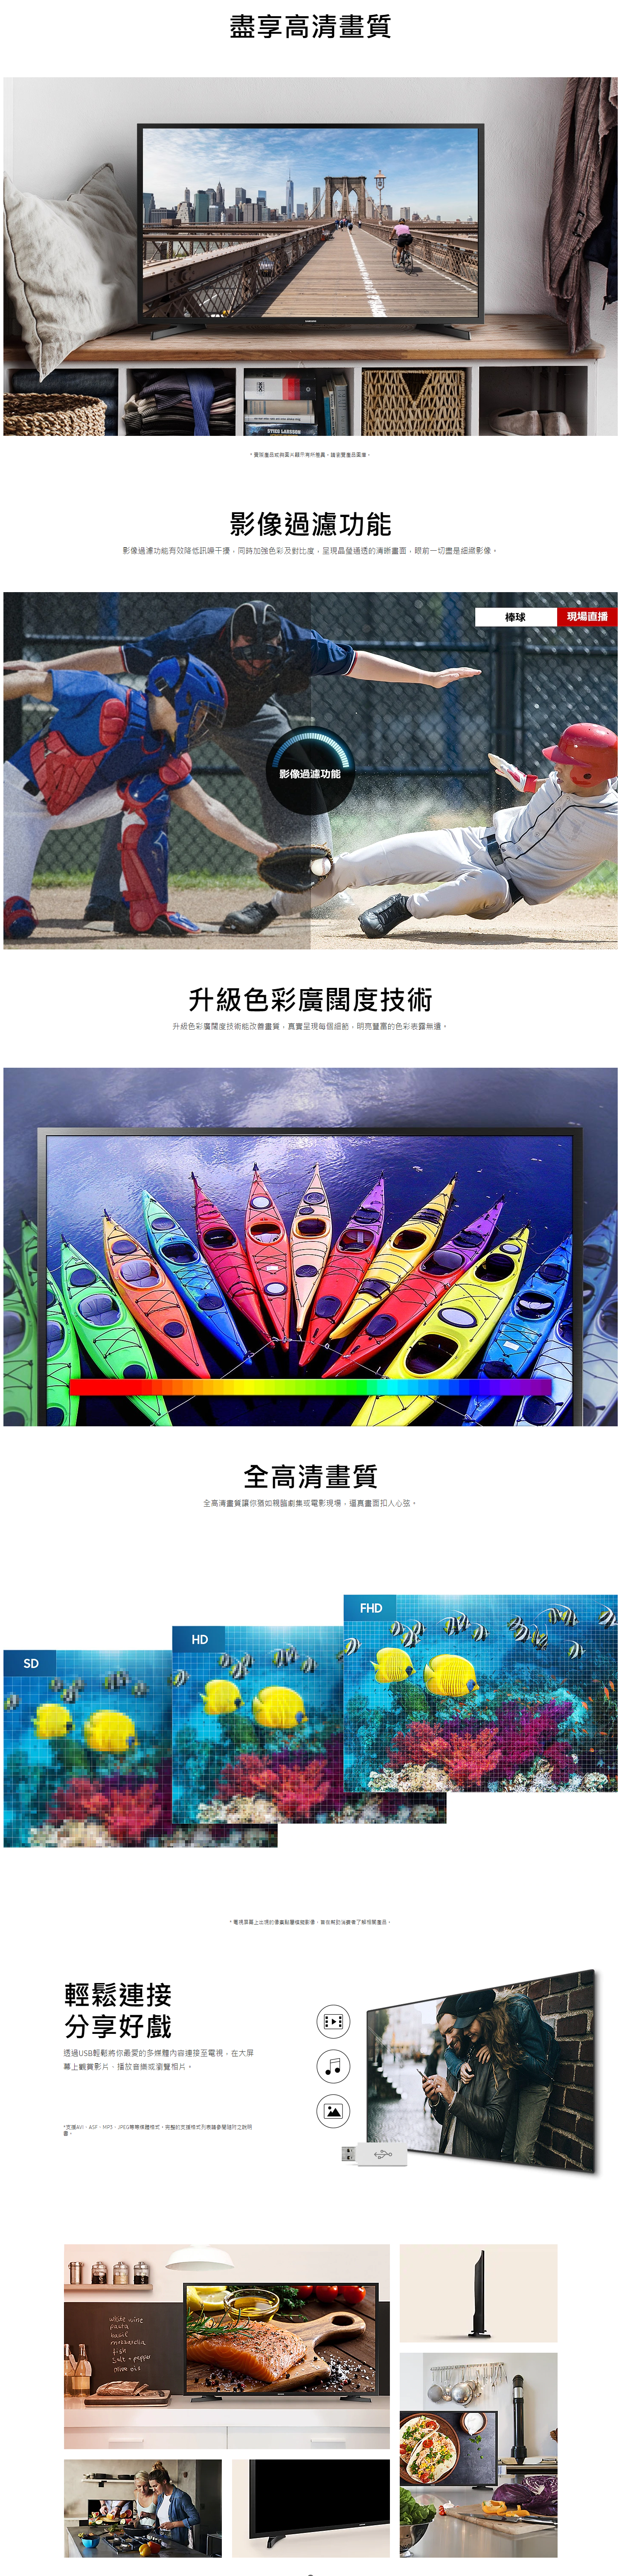 【已停產】Samsung 三星 UA40N5000AJ 40吋 FHD 電視